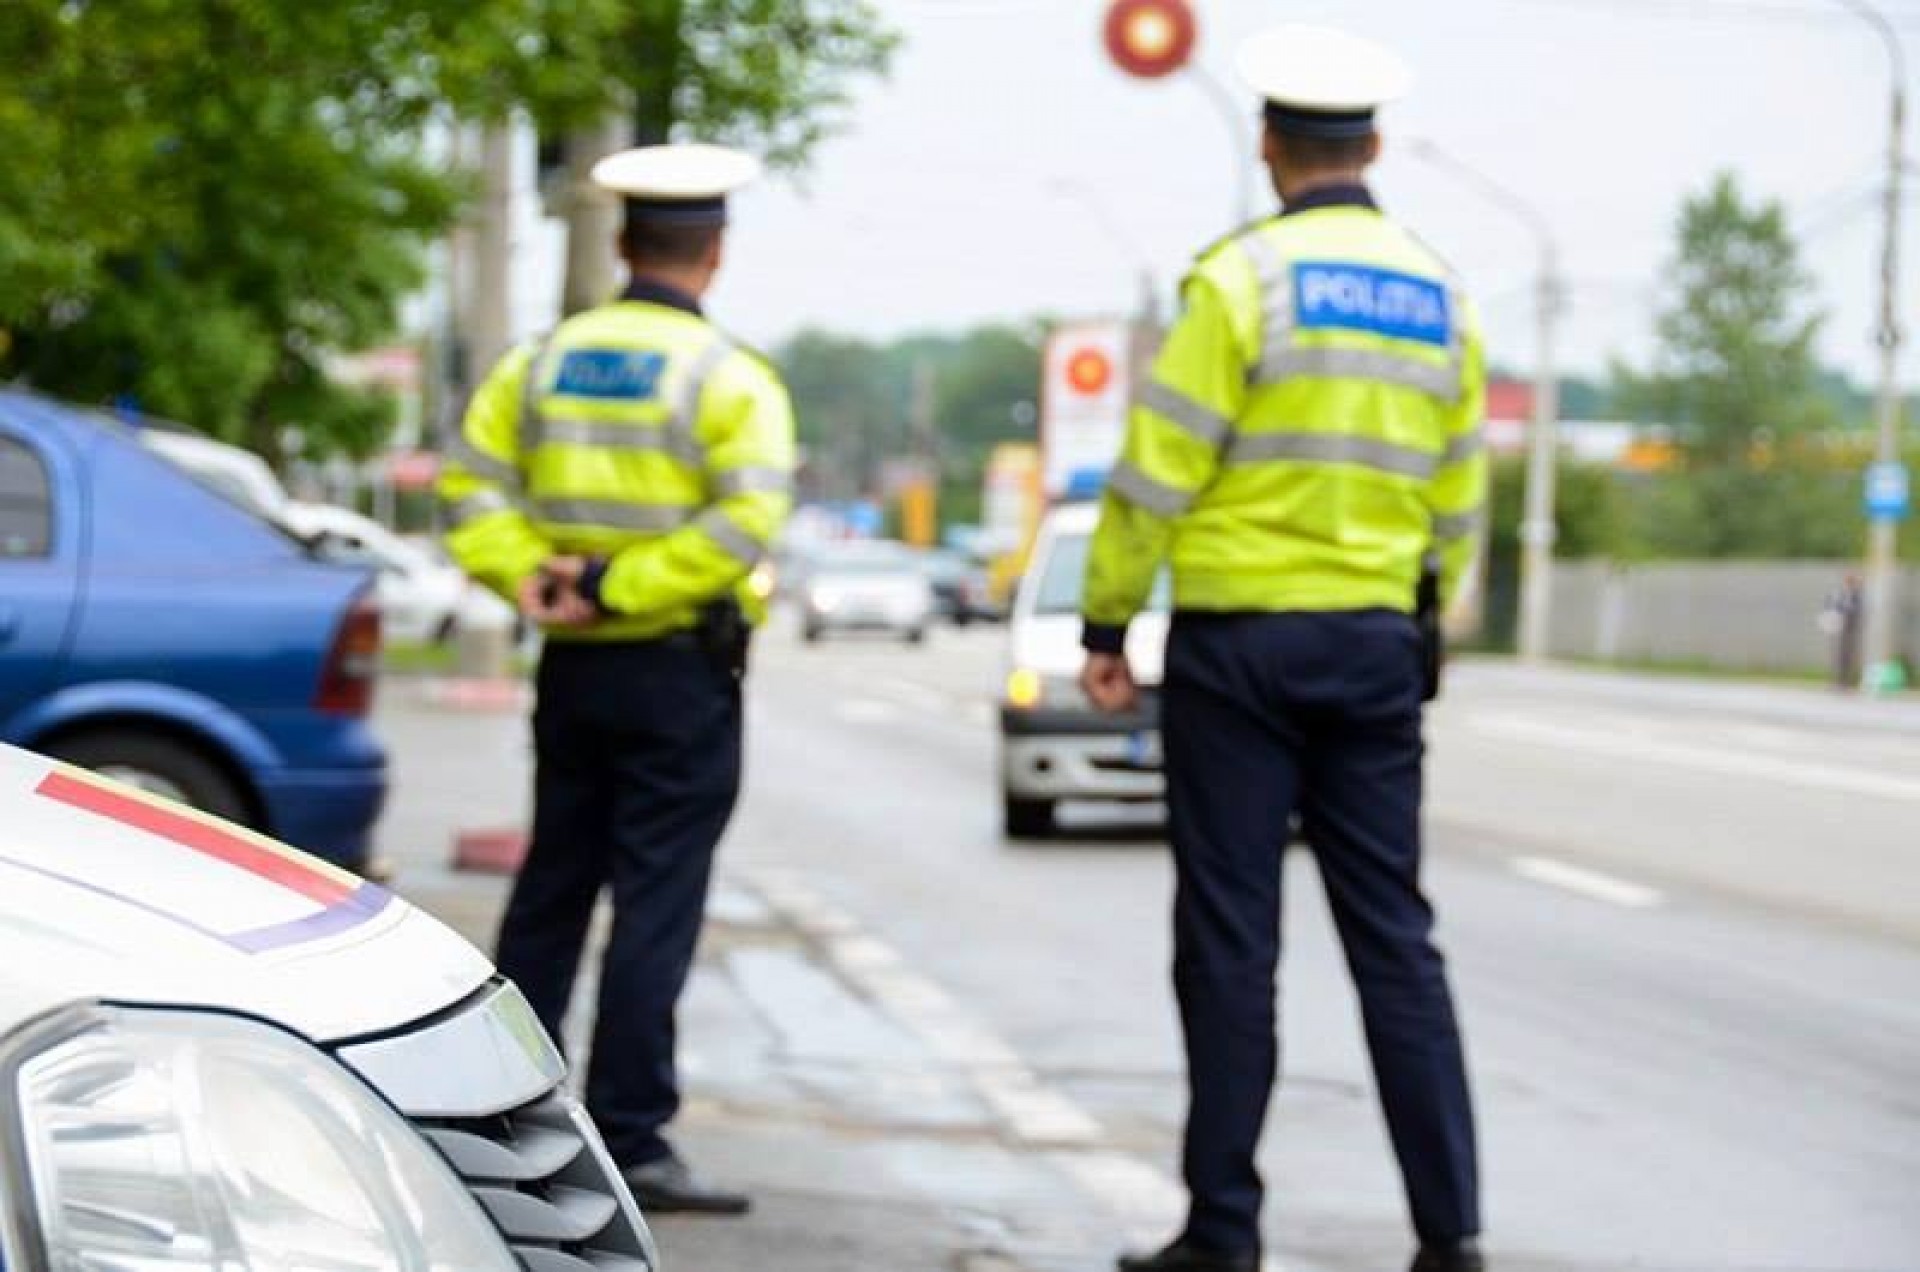 Poliţişti au fost reţinuţi, după ce au primit mită de la un şofer pentru a nu-l amenda